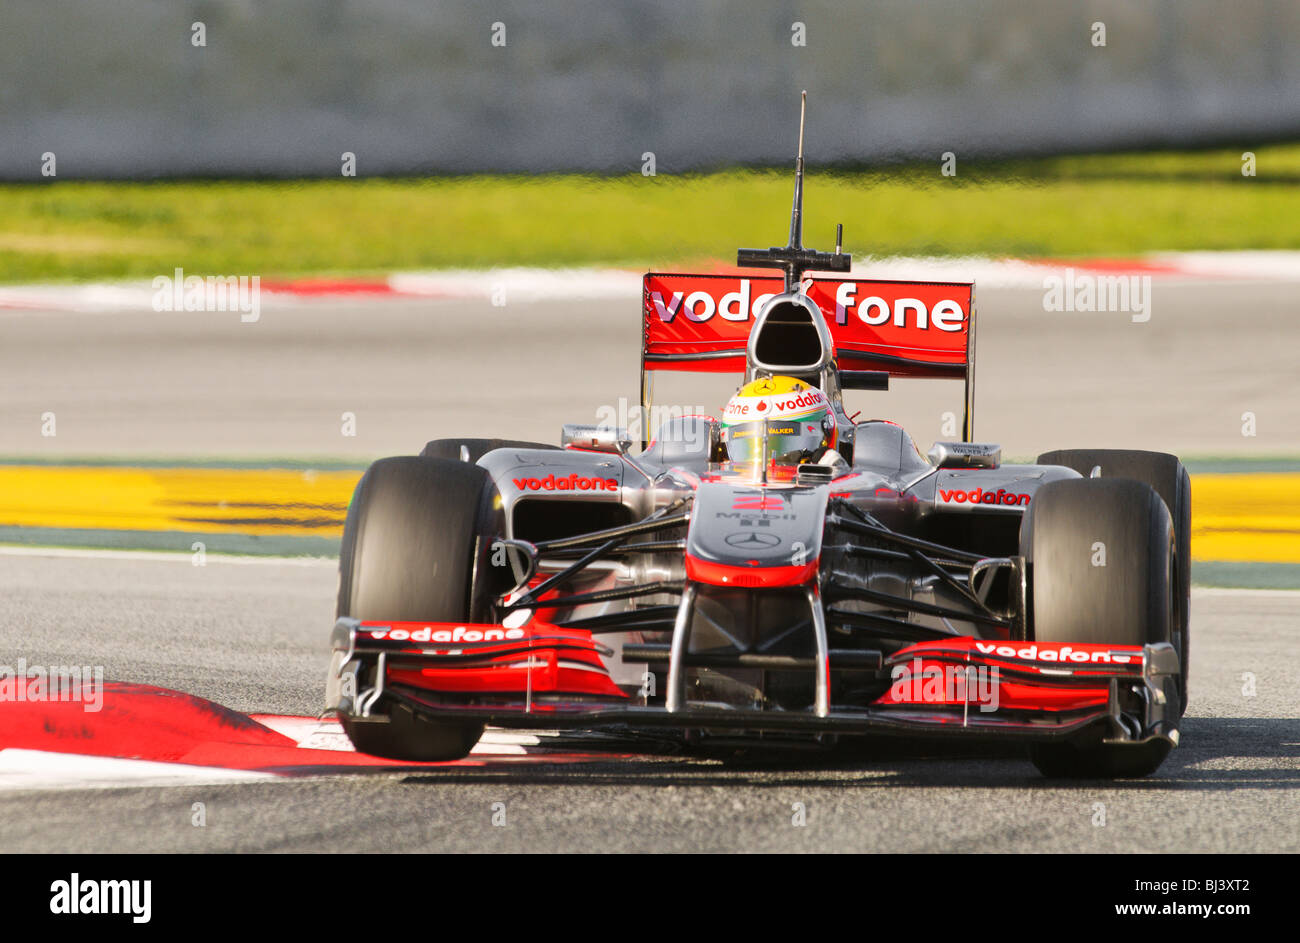 Lewis Hamilton (GB) en los McLaren-Mercedes MP4-25 race car durante las pruebas de Fórmula 1 Foto de stock